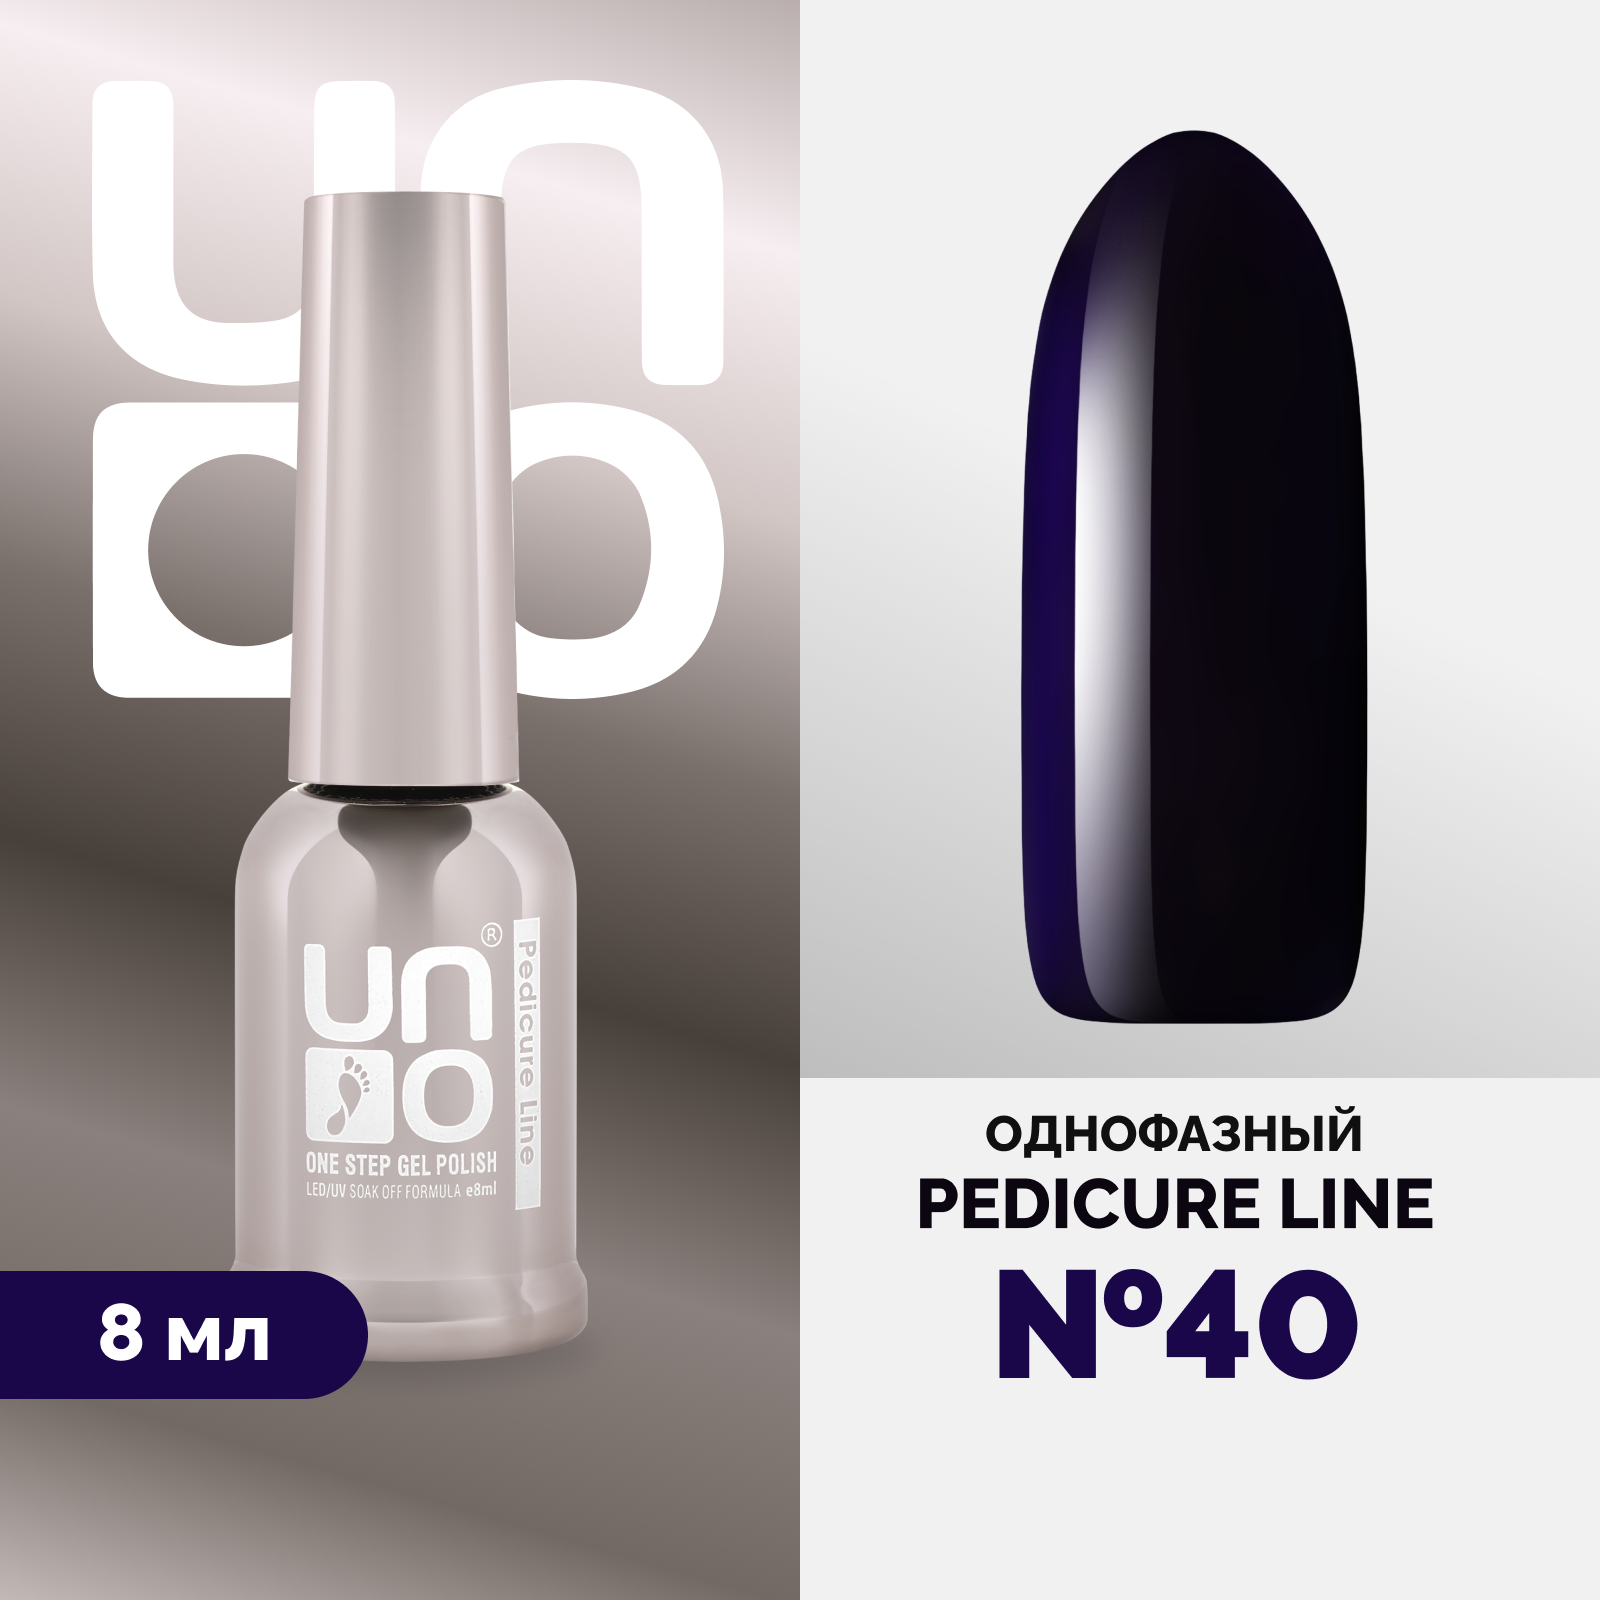 Однофазный гель-лак UNO Uno Pedicure Line 40 8 мл утюг galaxy line gl 6106 2200 вт керамика вертикальное отпаривание противокапельная система защита от накипи 1 8 м бело фиолетовый